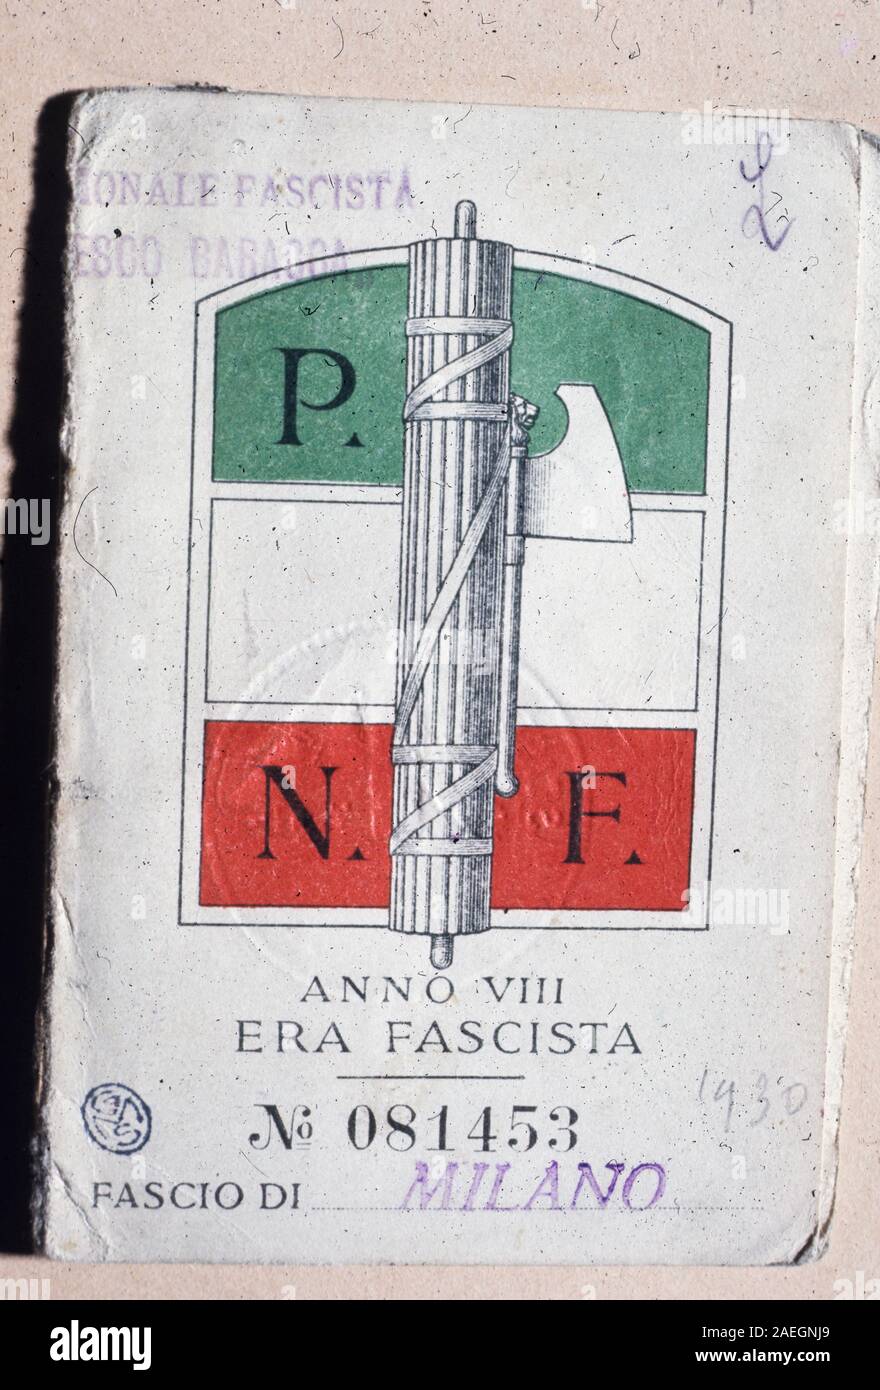 Die Mitgliedskarte für den Faschismus, fascio di Milano, Pnf, der nationalen faschistischen Partei, Jahr VIII 1930 Stockfoto